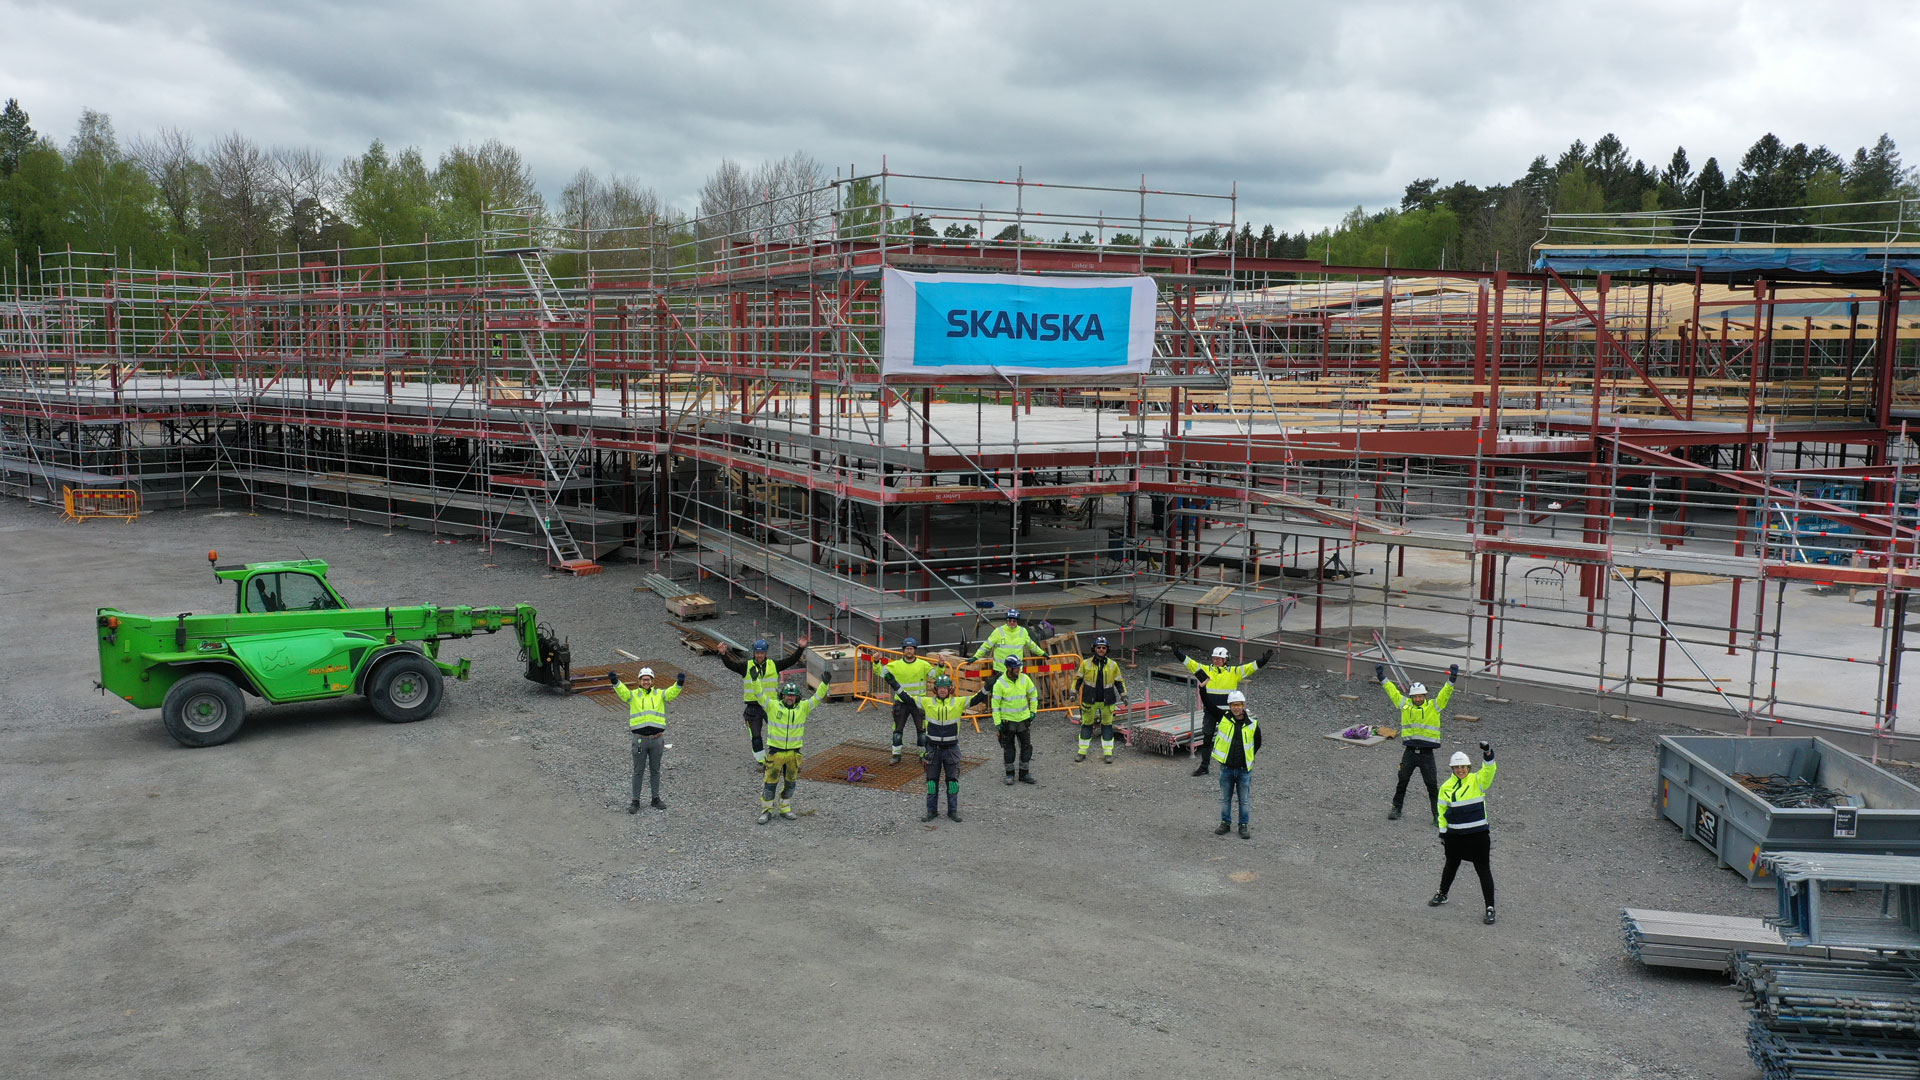 Redan från byggstart var målet varit att skapa en socialt hållbar, hälsosam och säker arbetsplats. Nu har teamet bakom nya Stenportskolan i Lidköping utsetts till arbetsmiljöhjältar under årets Skanska Safety Week.